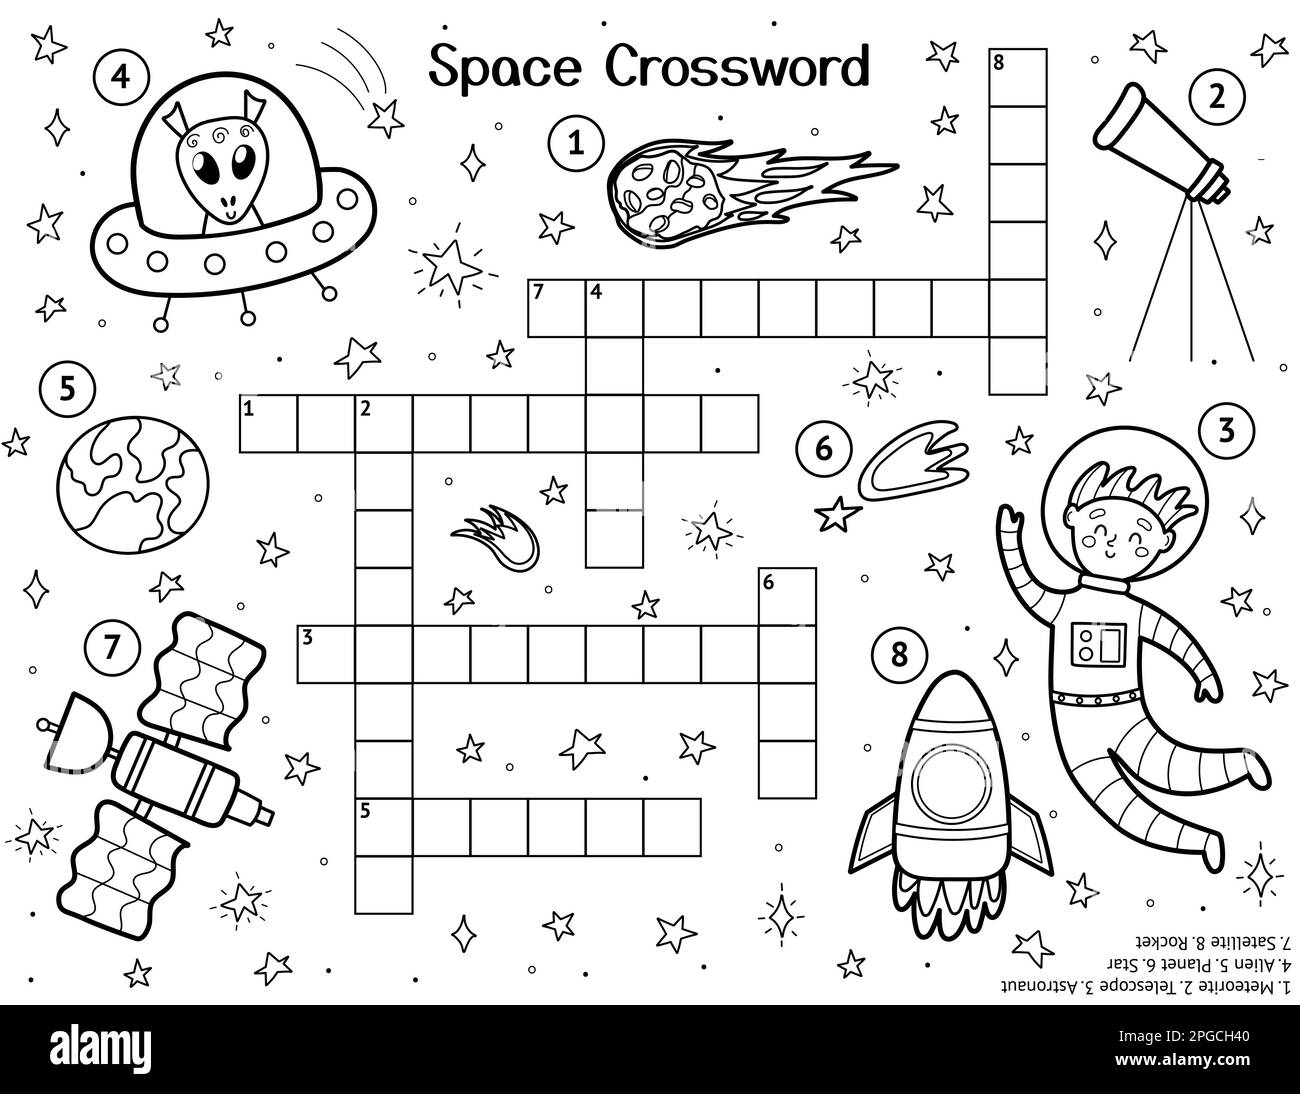 Кроссворд про космос для детей